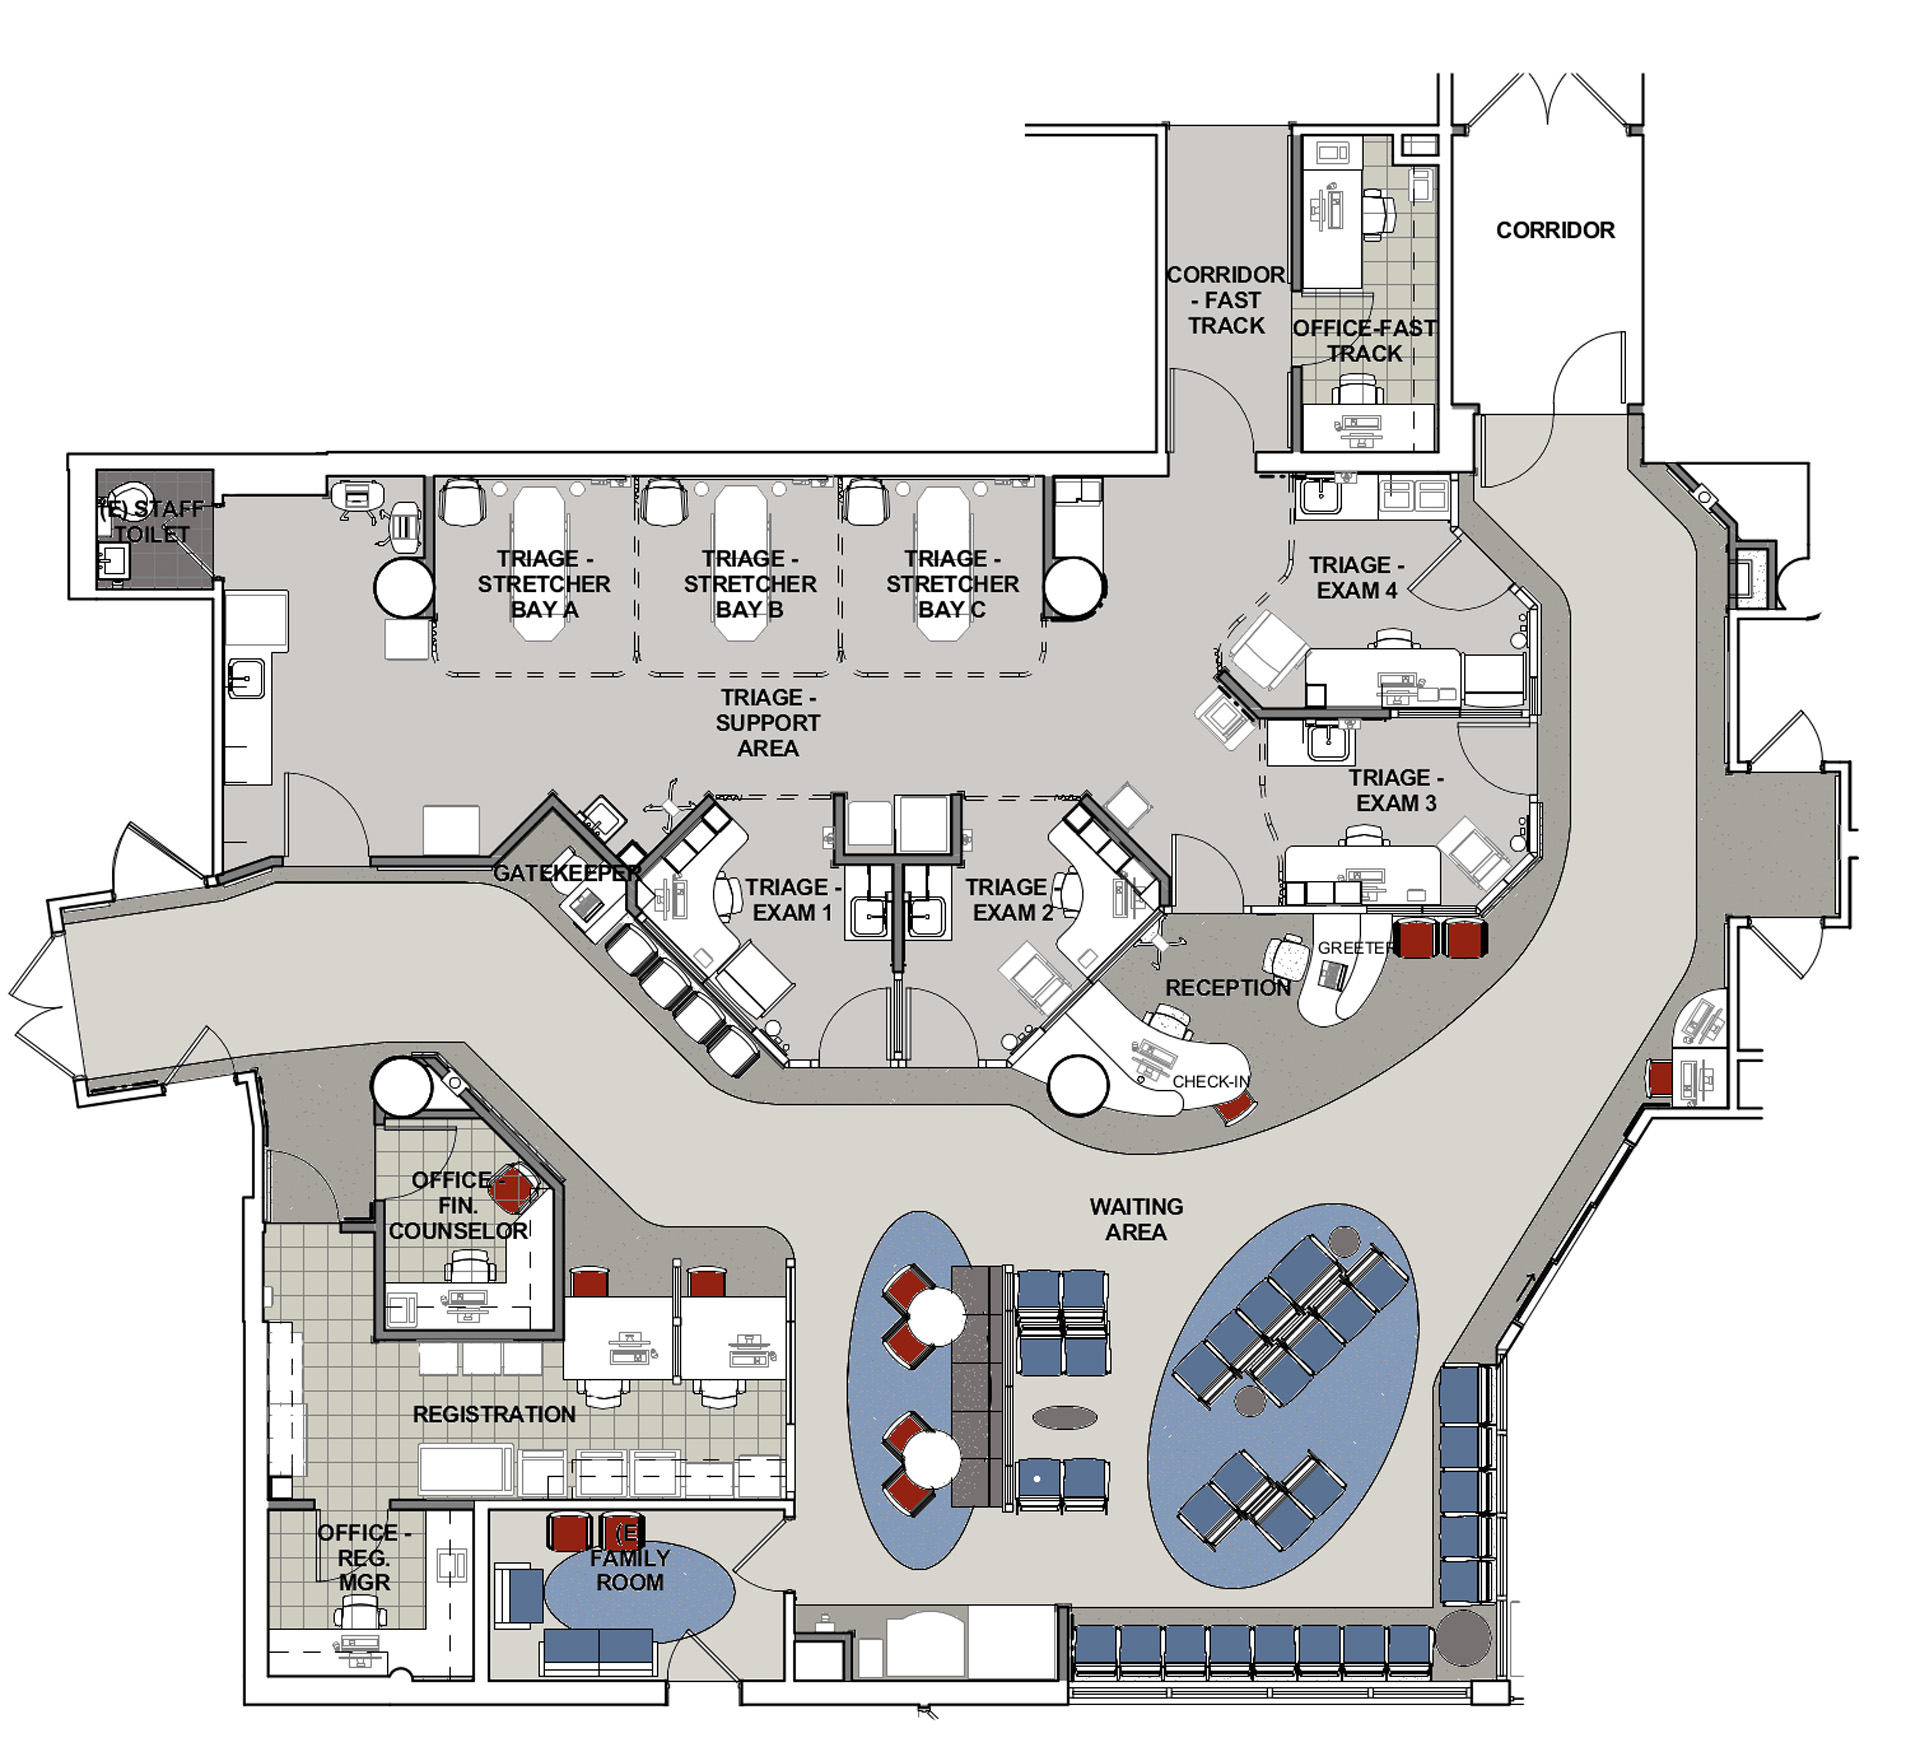 Hospital Emergency Room Floor Plan